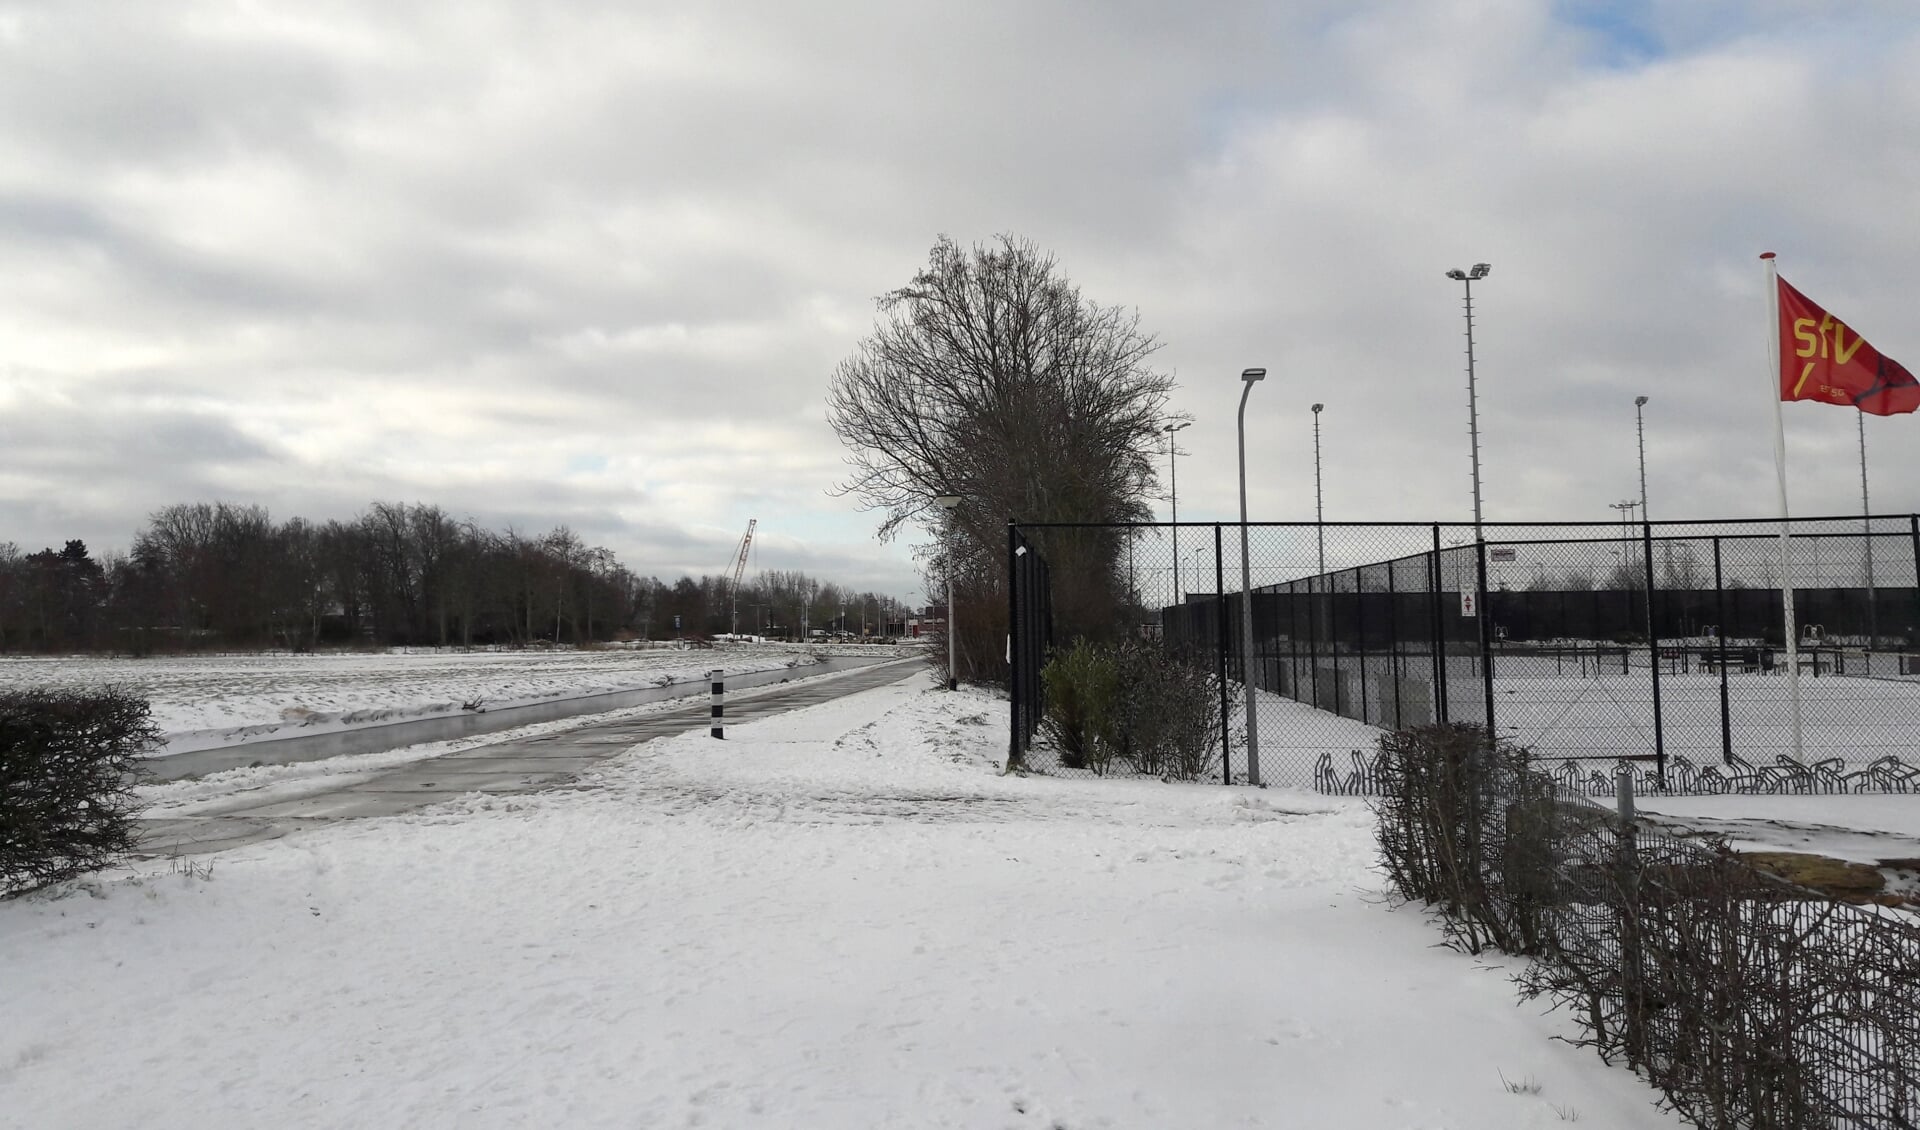 Rechts het tennispark van de STV, de uitbreiding moet aan de linkerkant komen, in het Langeveld.